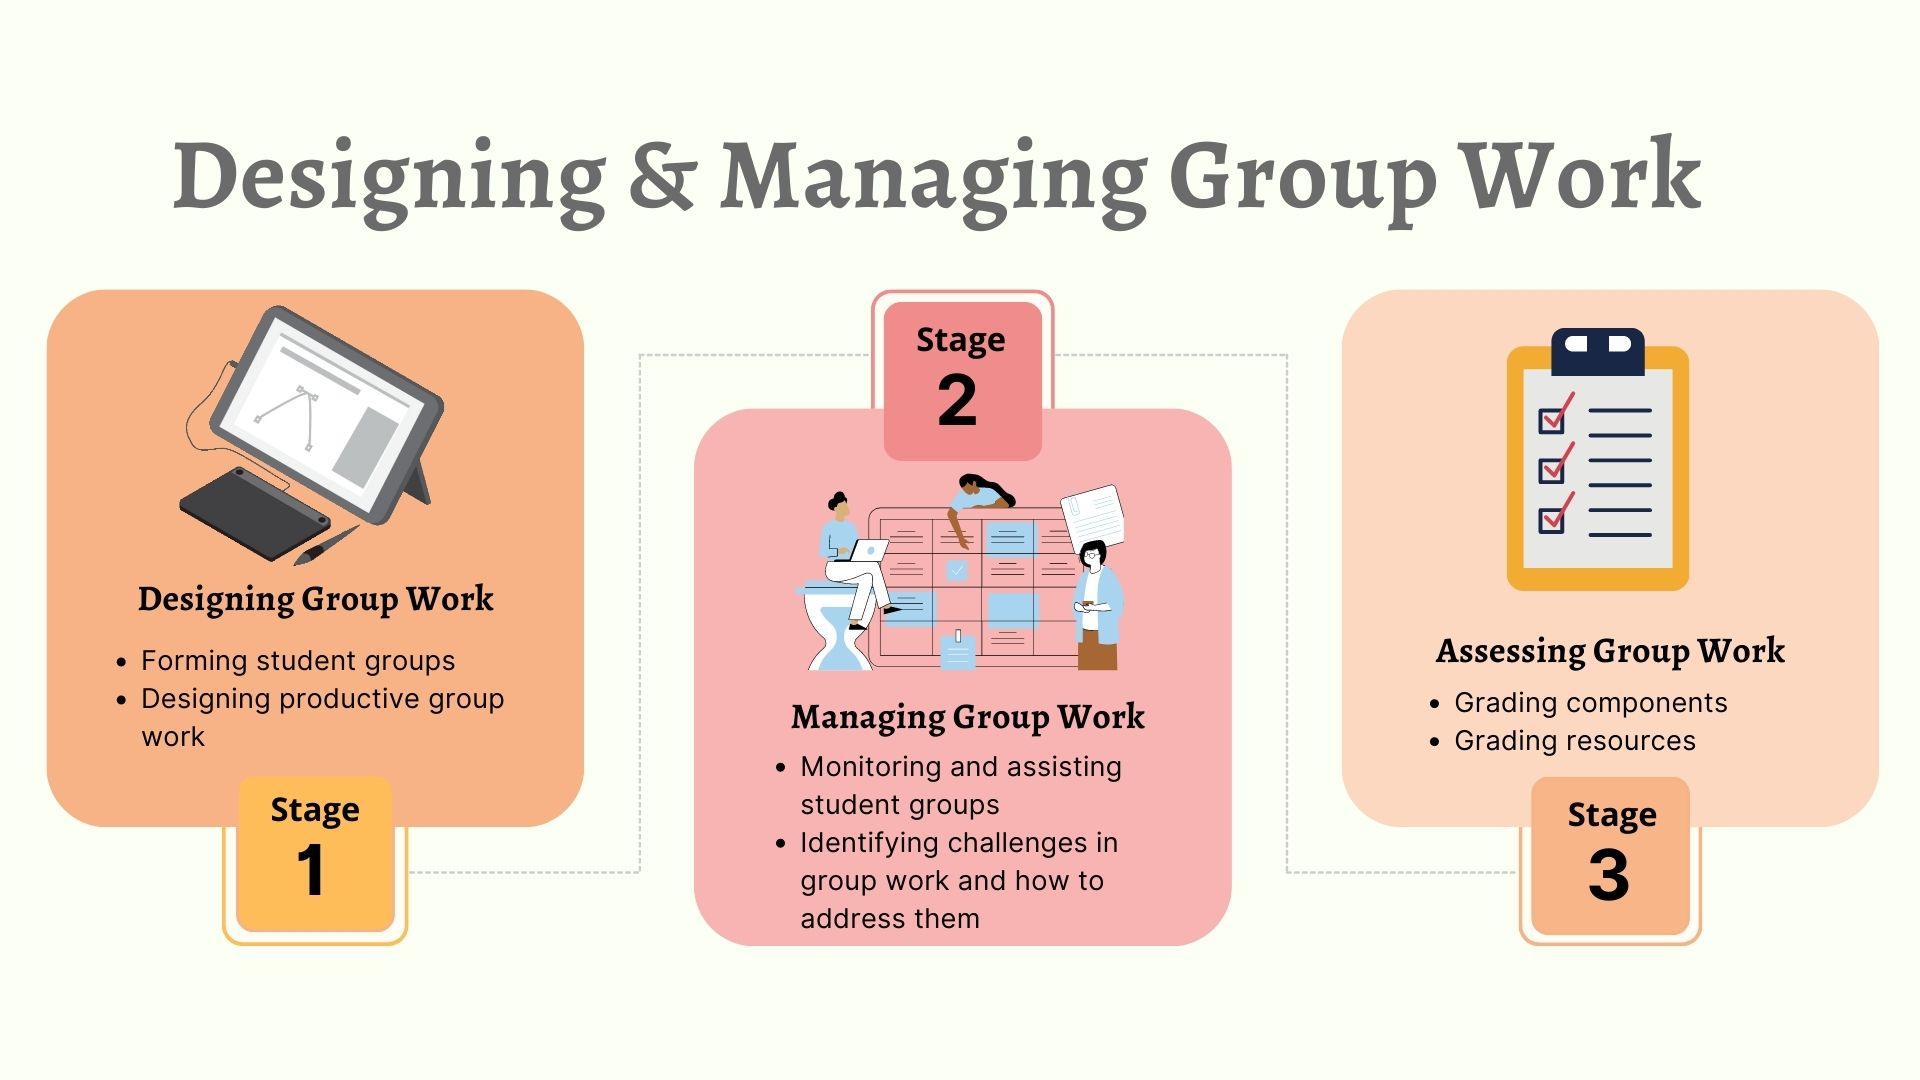 Designing & Managing Group Work